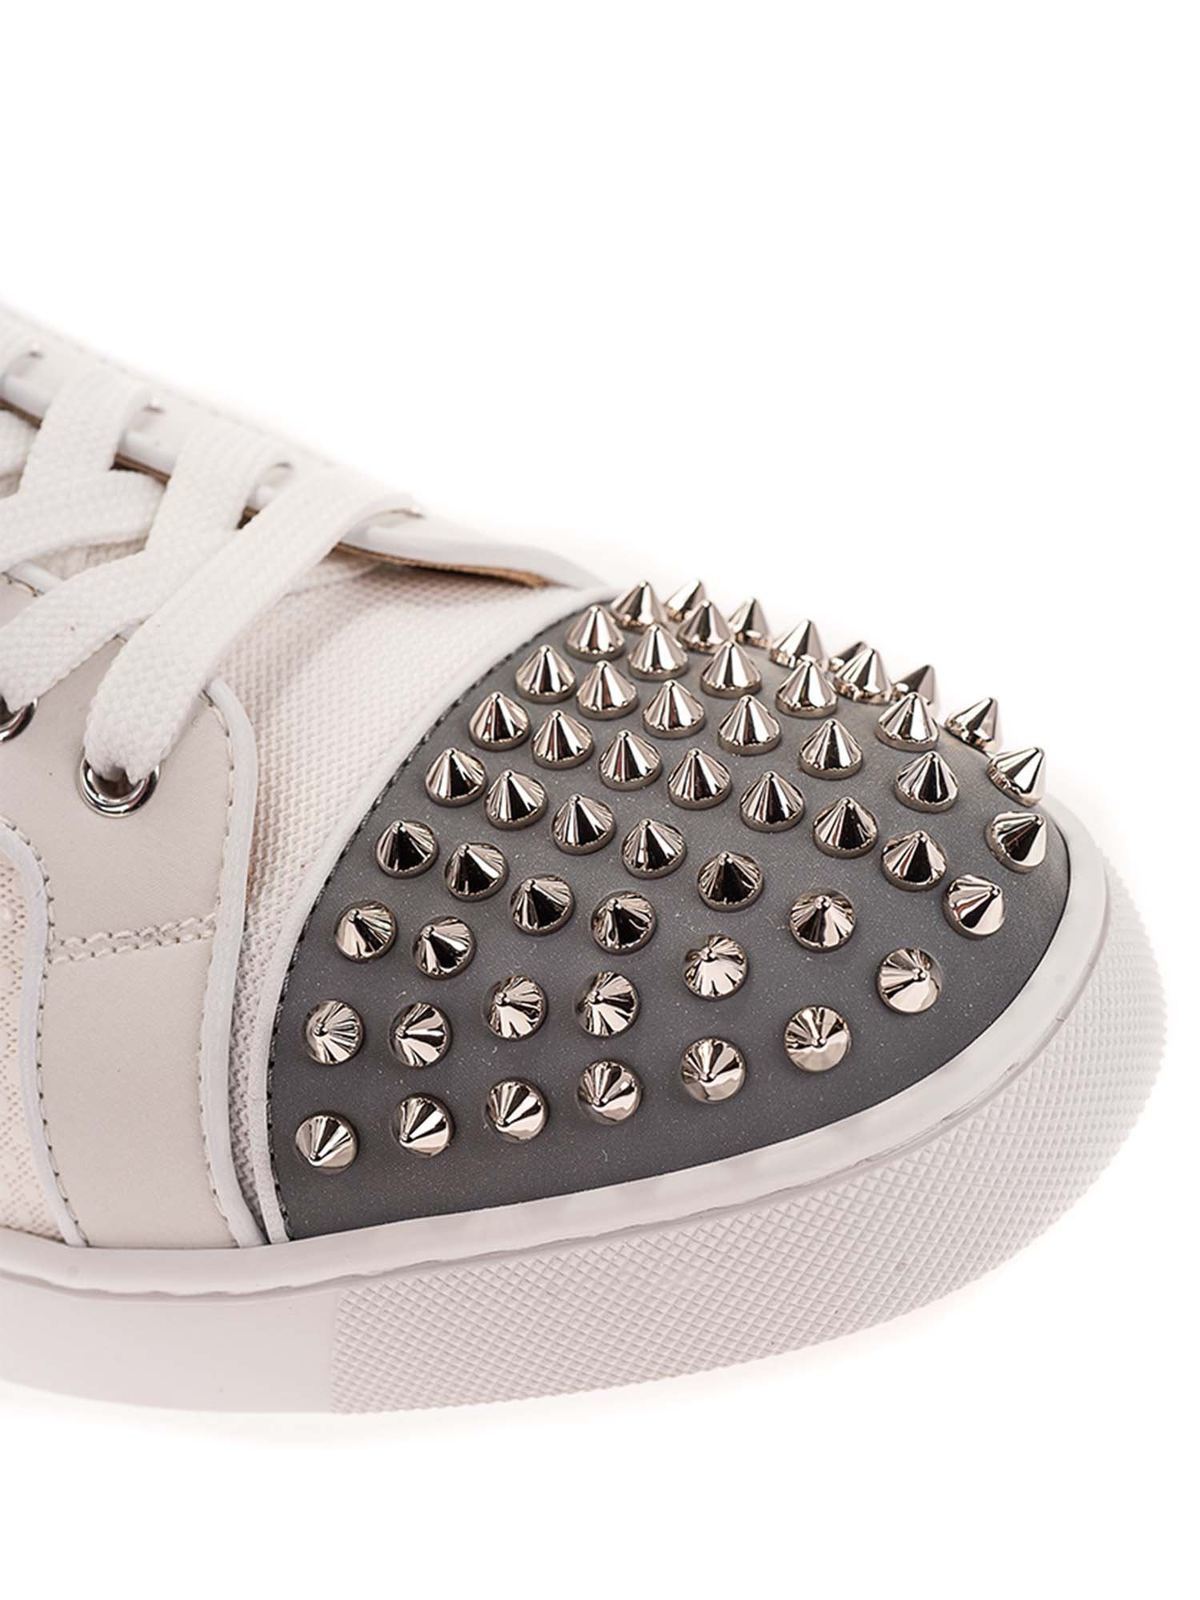 Shop Christian Louboutin Men's Silver Sneakers